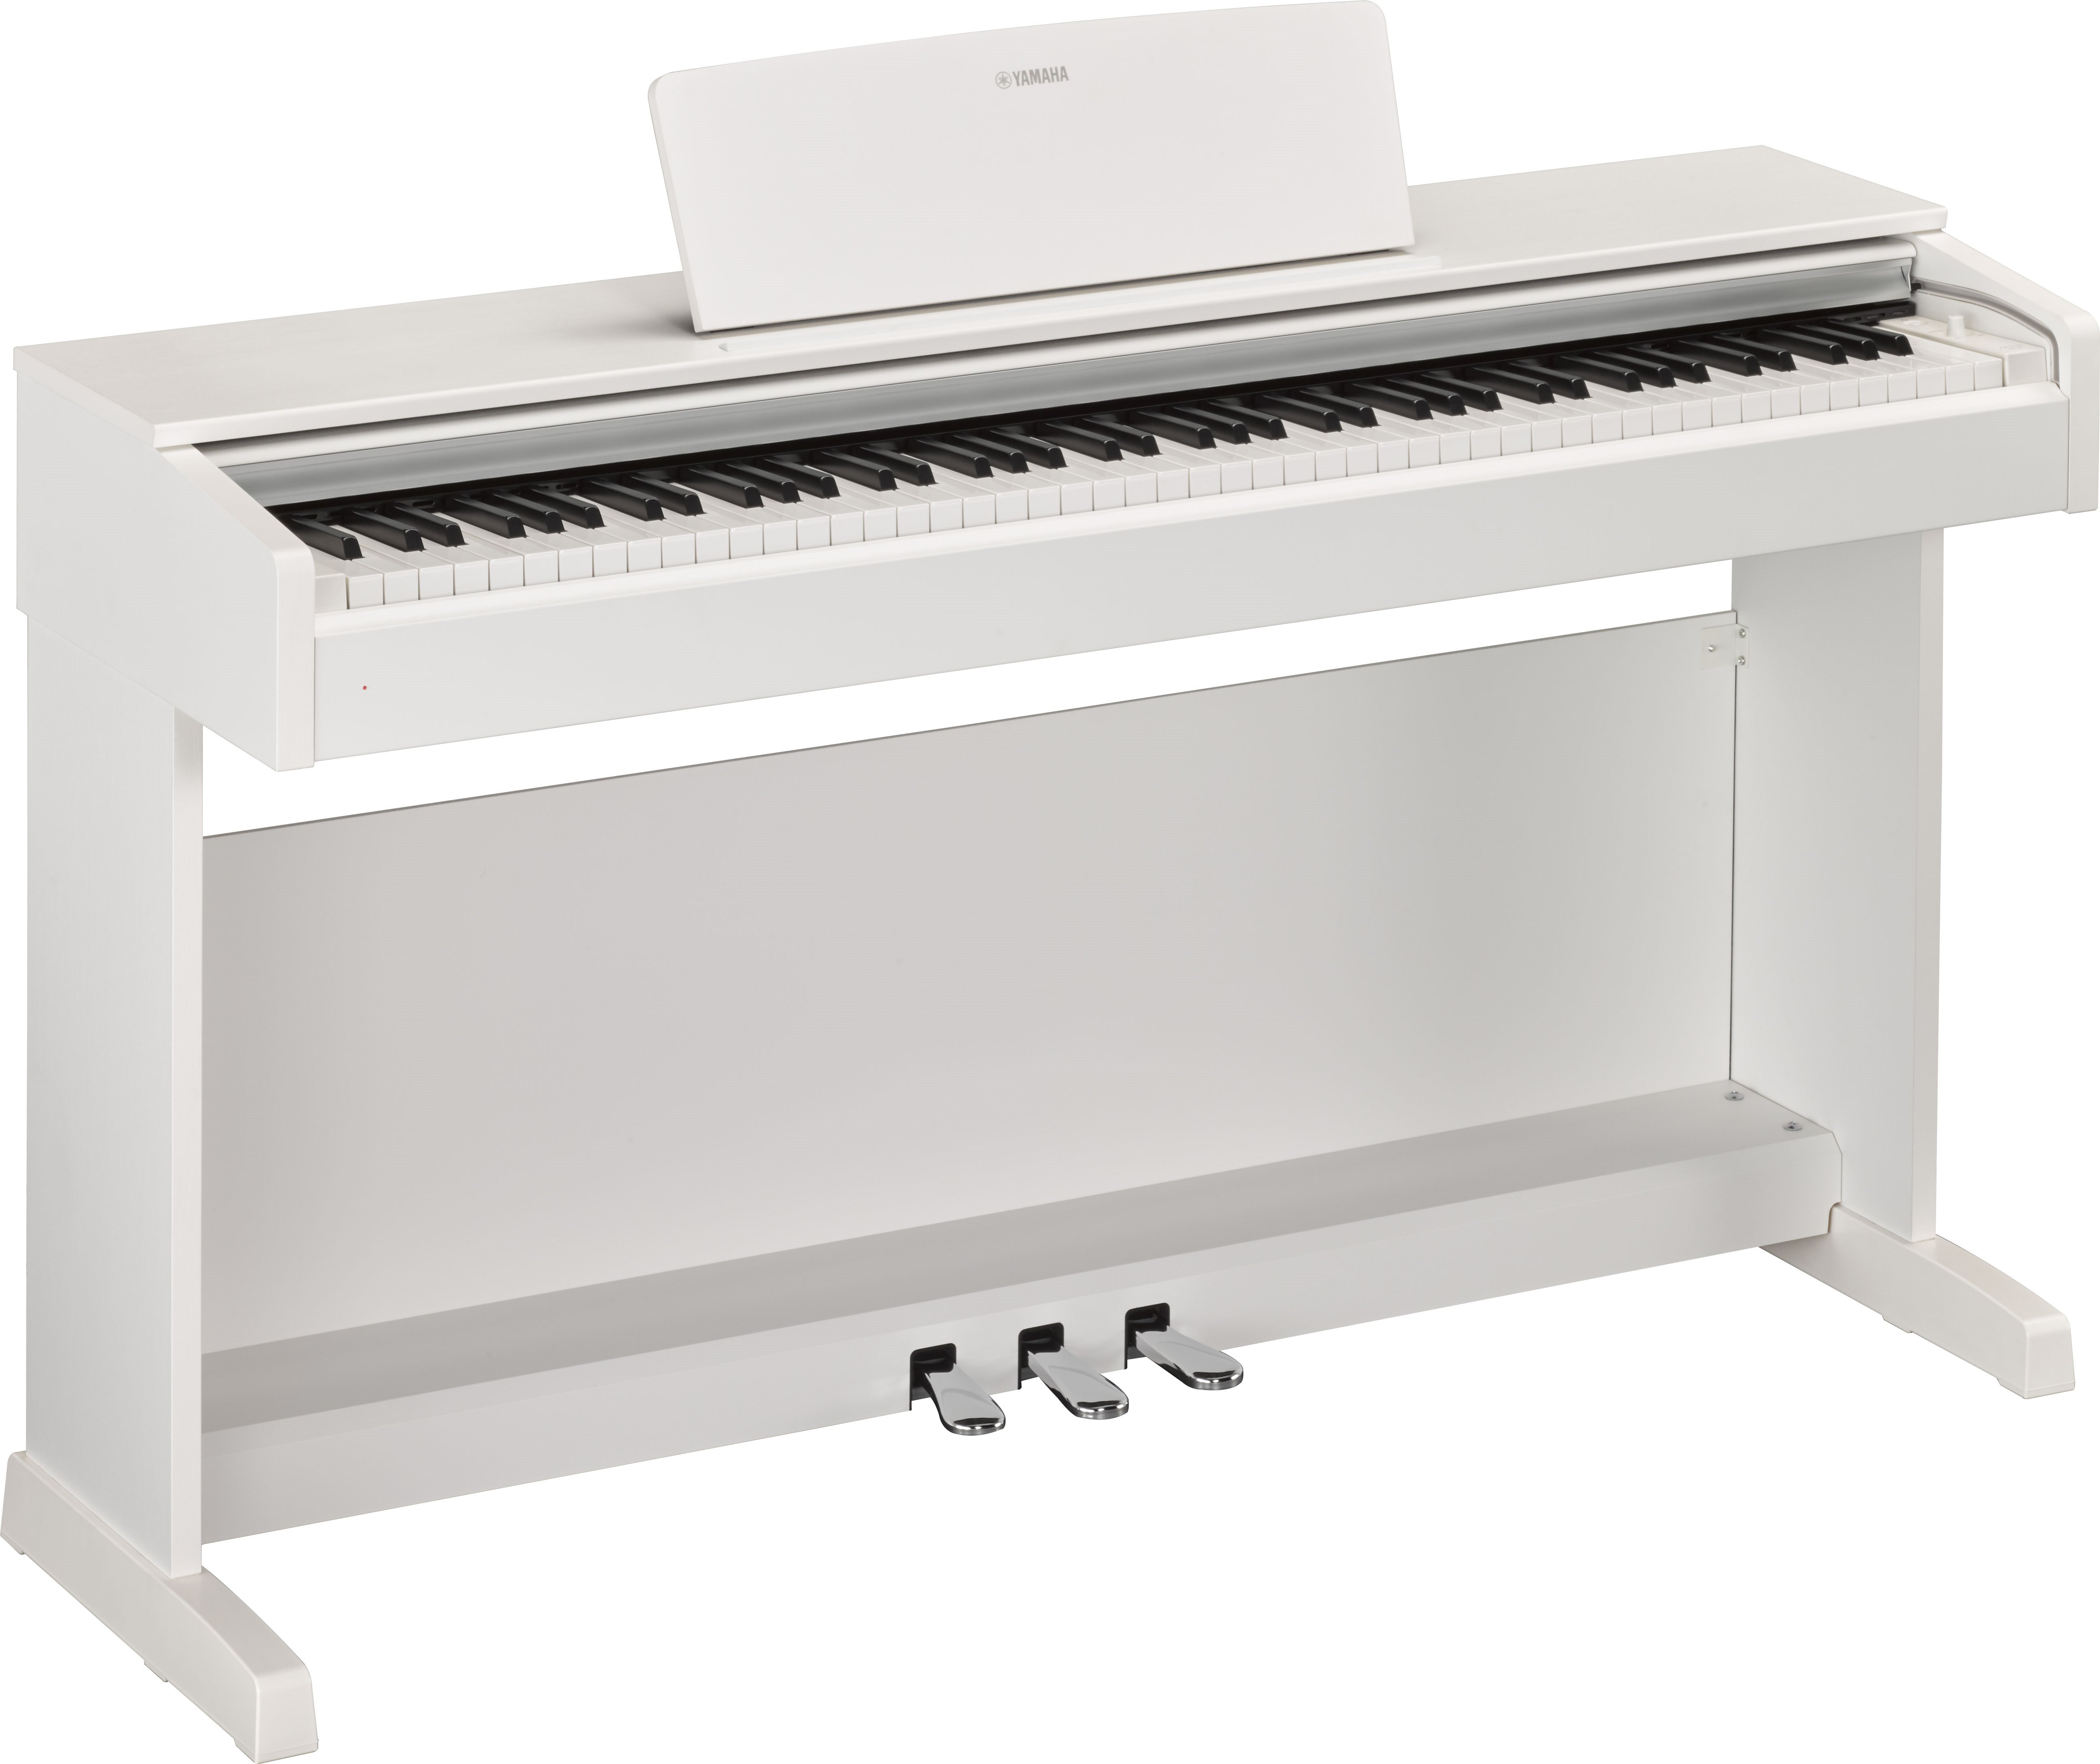 P-143 - Accessoires optionnels - SERIE P - Pianos - Instruments de musique  - Produits - Yamaha - France